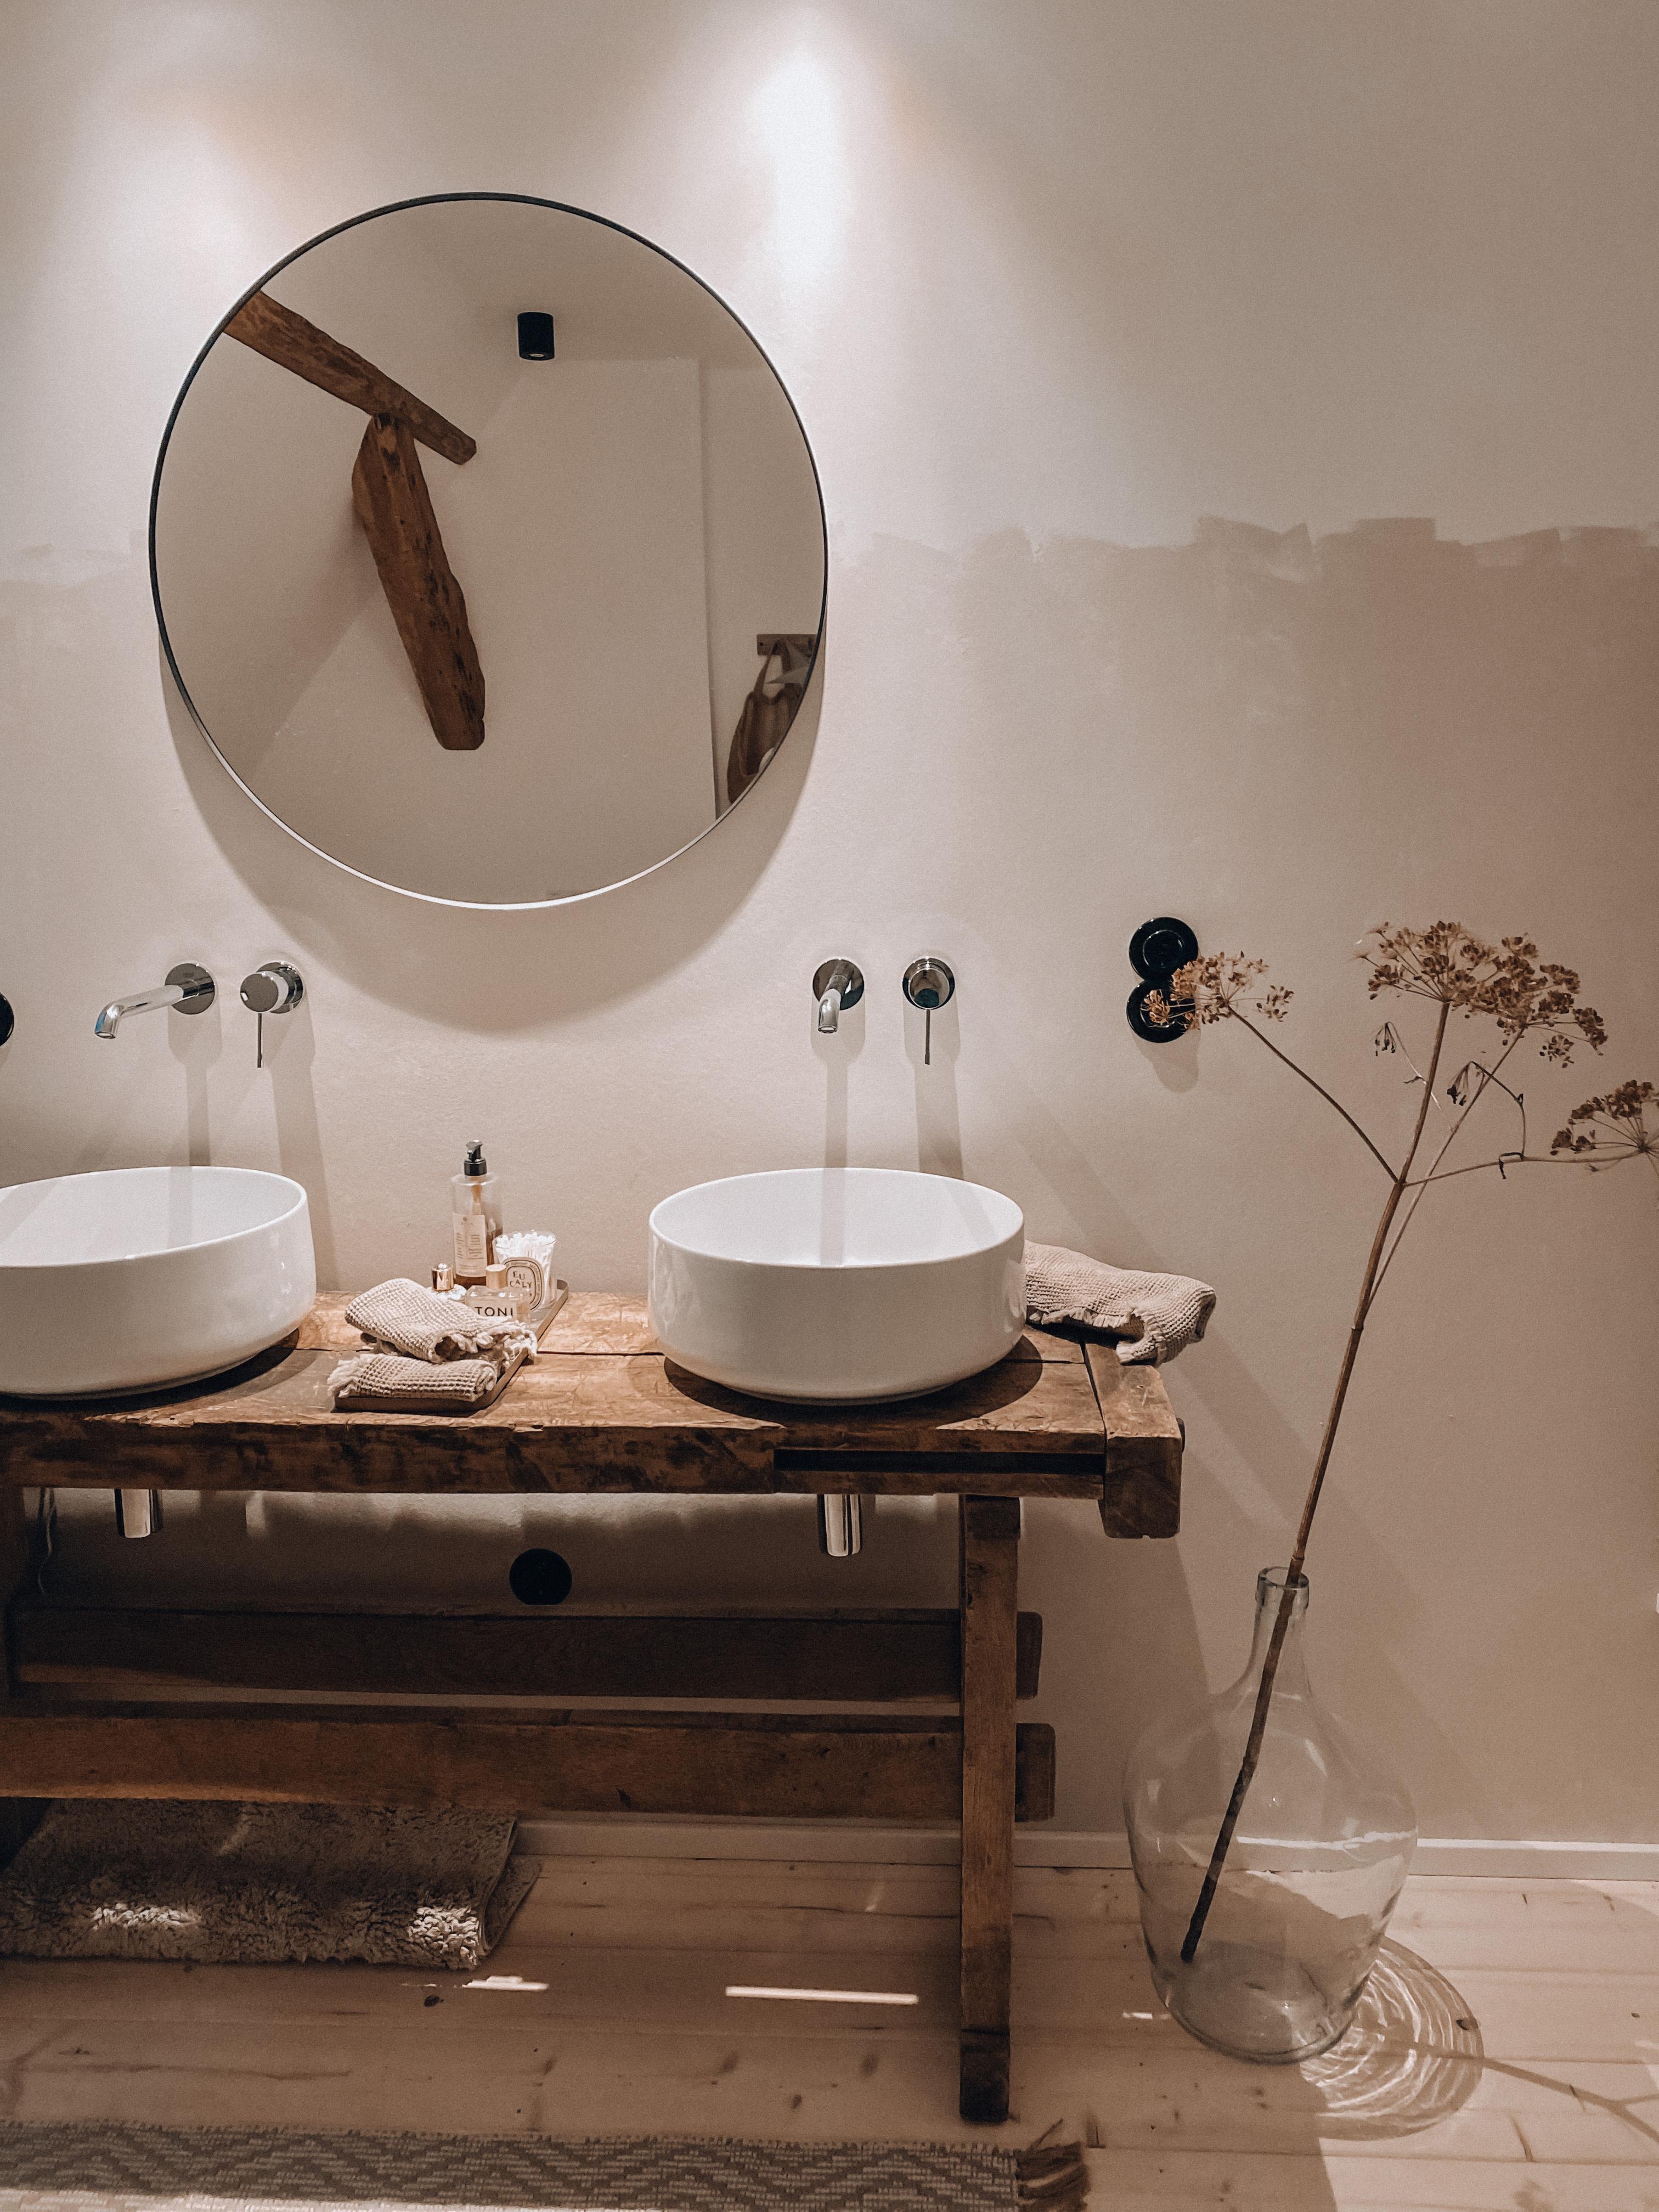 Bathroom 🤍
#badezimmerdeko #bdezimmer #werkbank #spiegel #ikea #dielenboden #trockenblumen #lichtschalter #altbauliebe